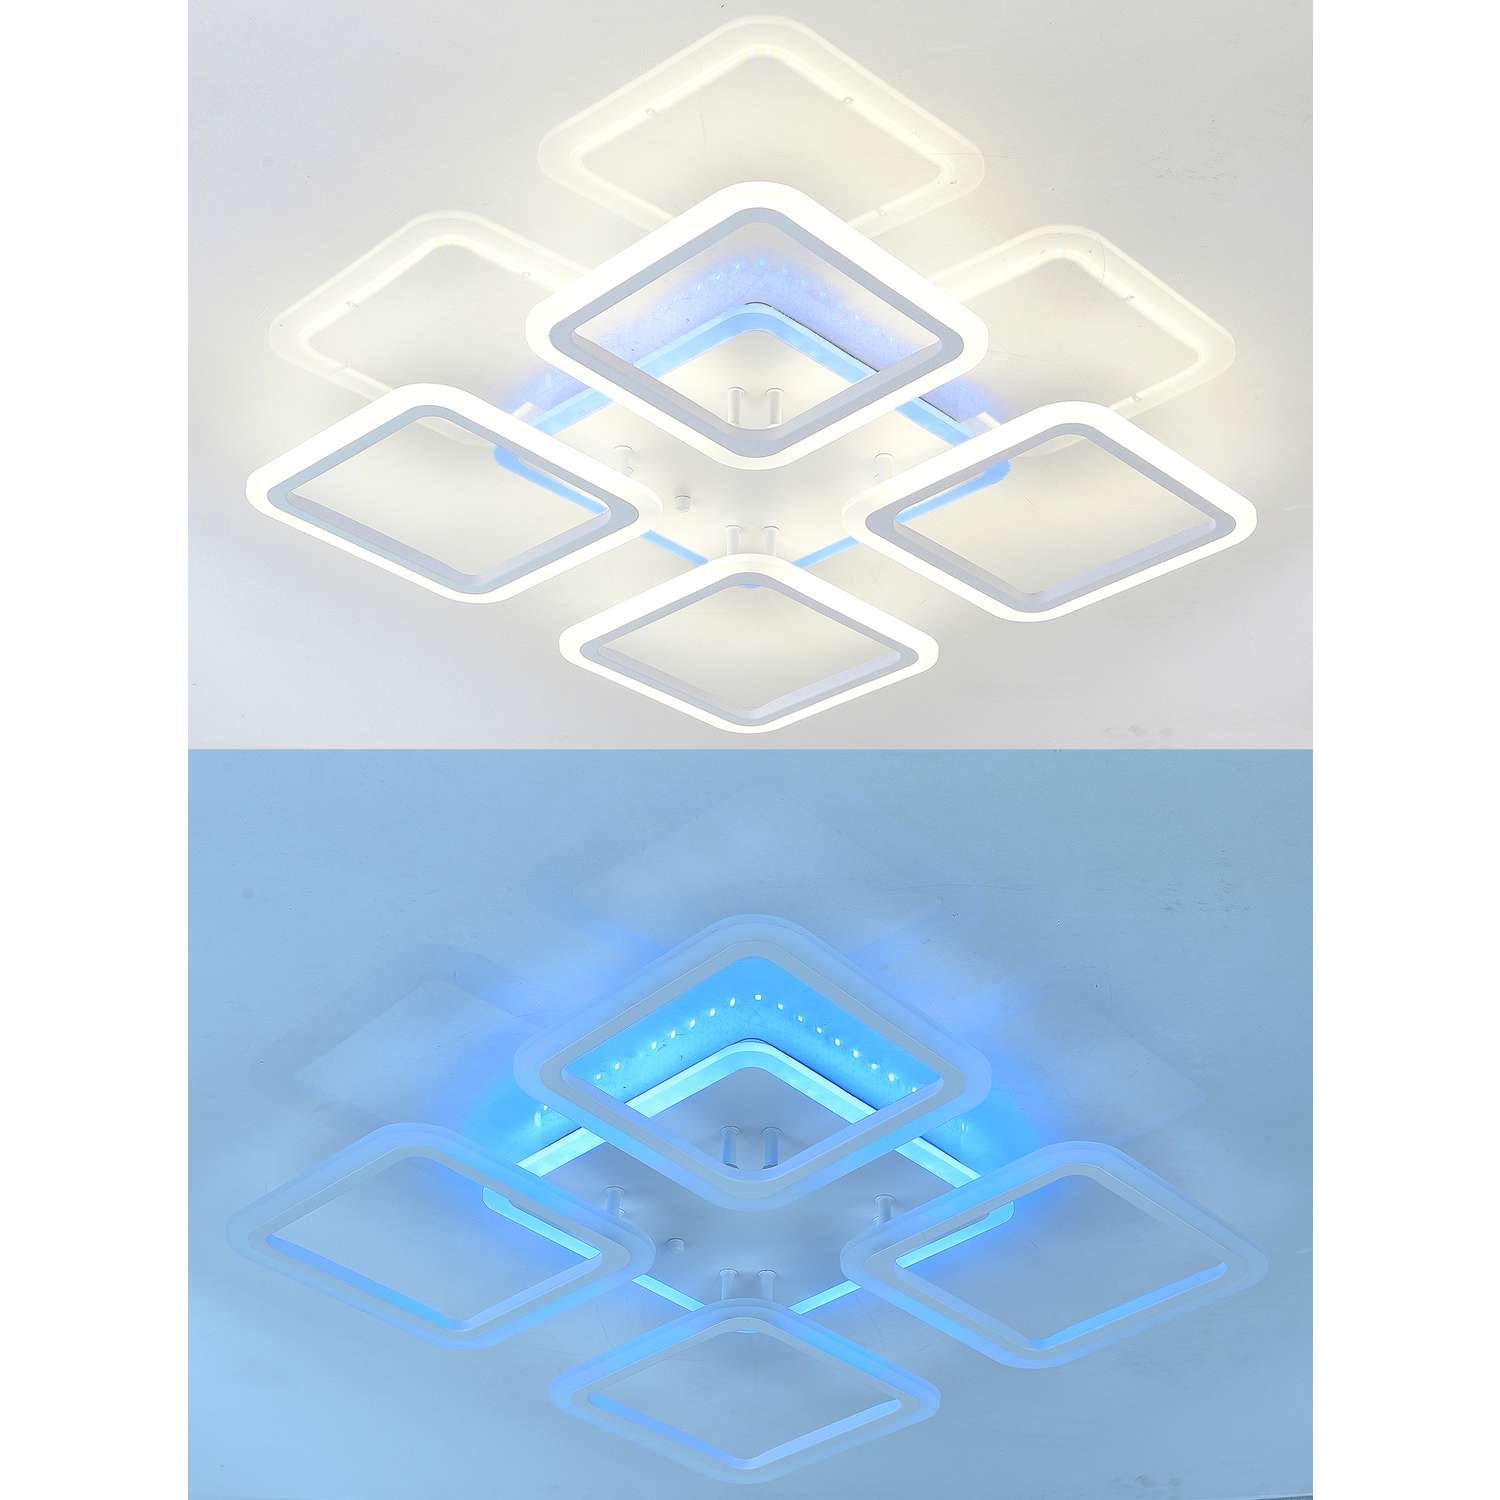 Светодиодный светильник NATALI KOVALTSEVA люстра 100W белый LED с RGB подсветкой - фото 2